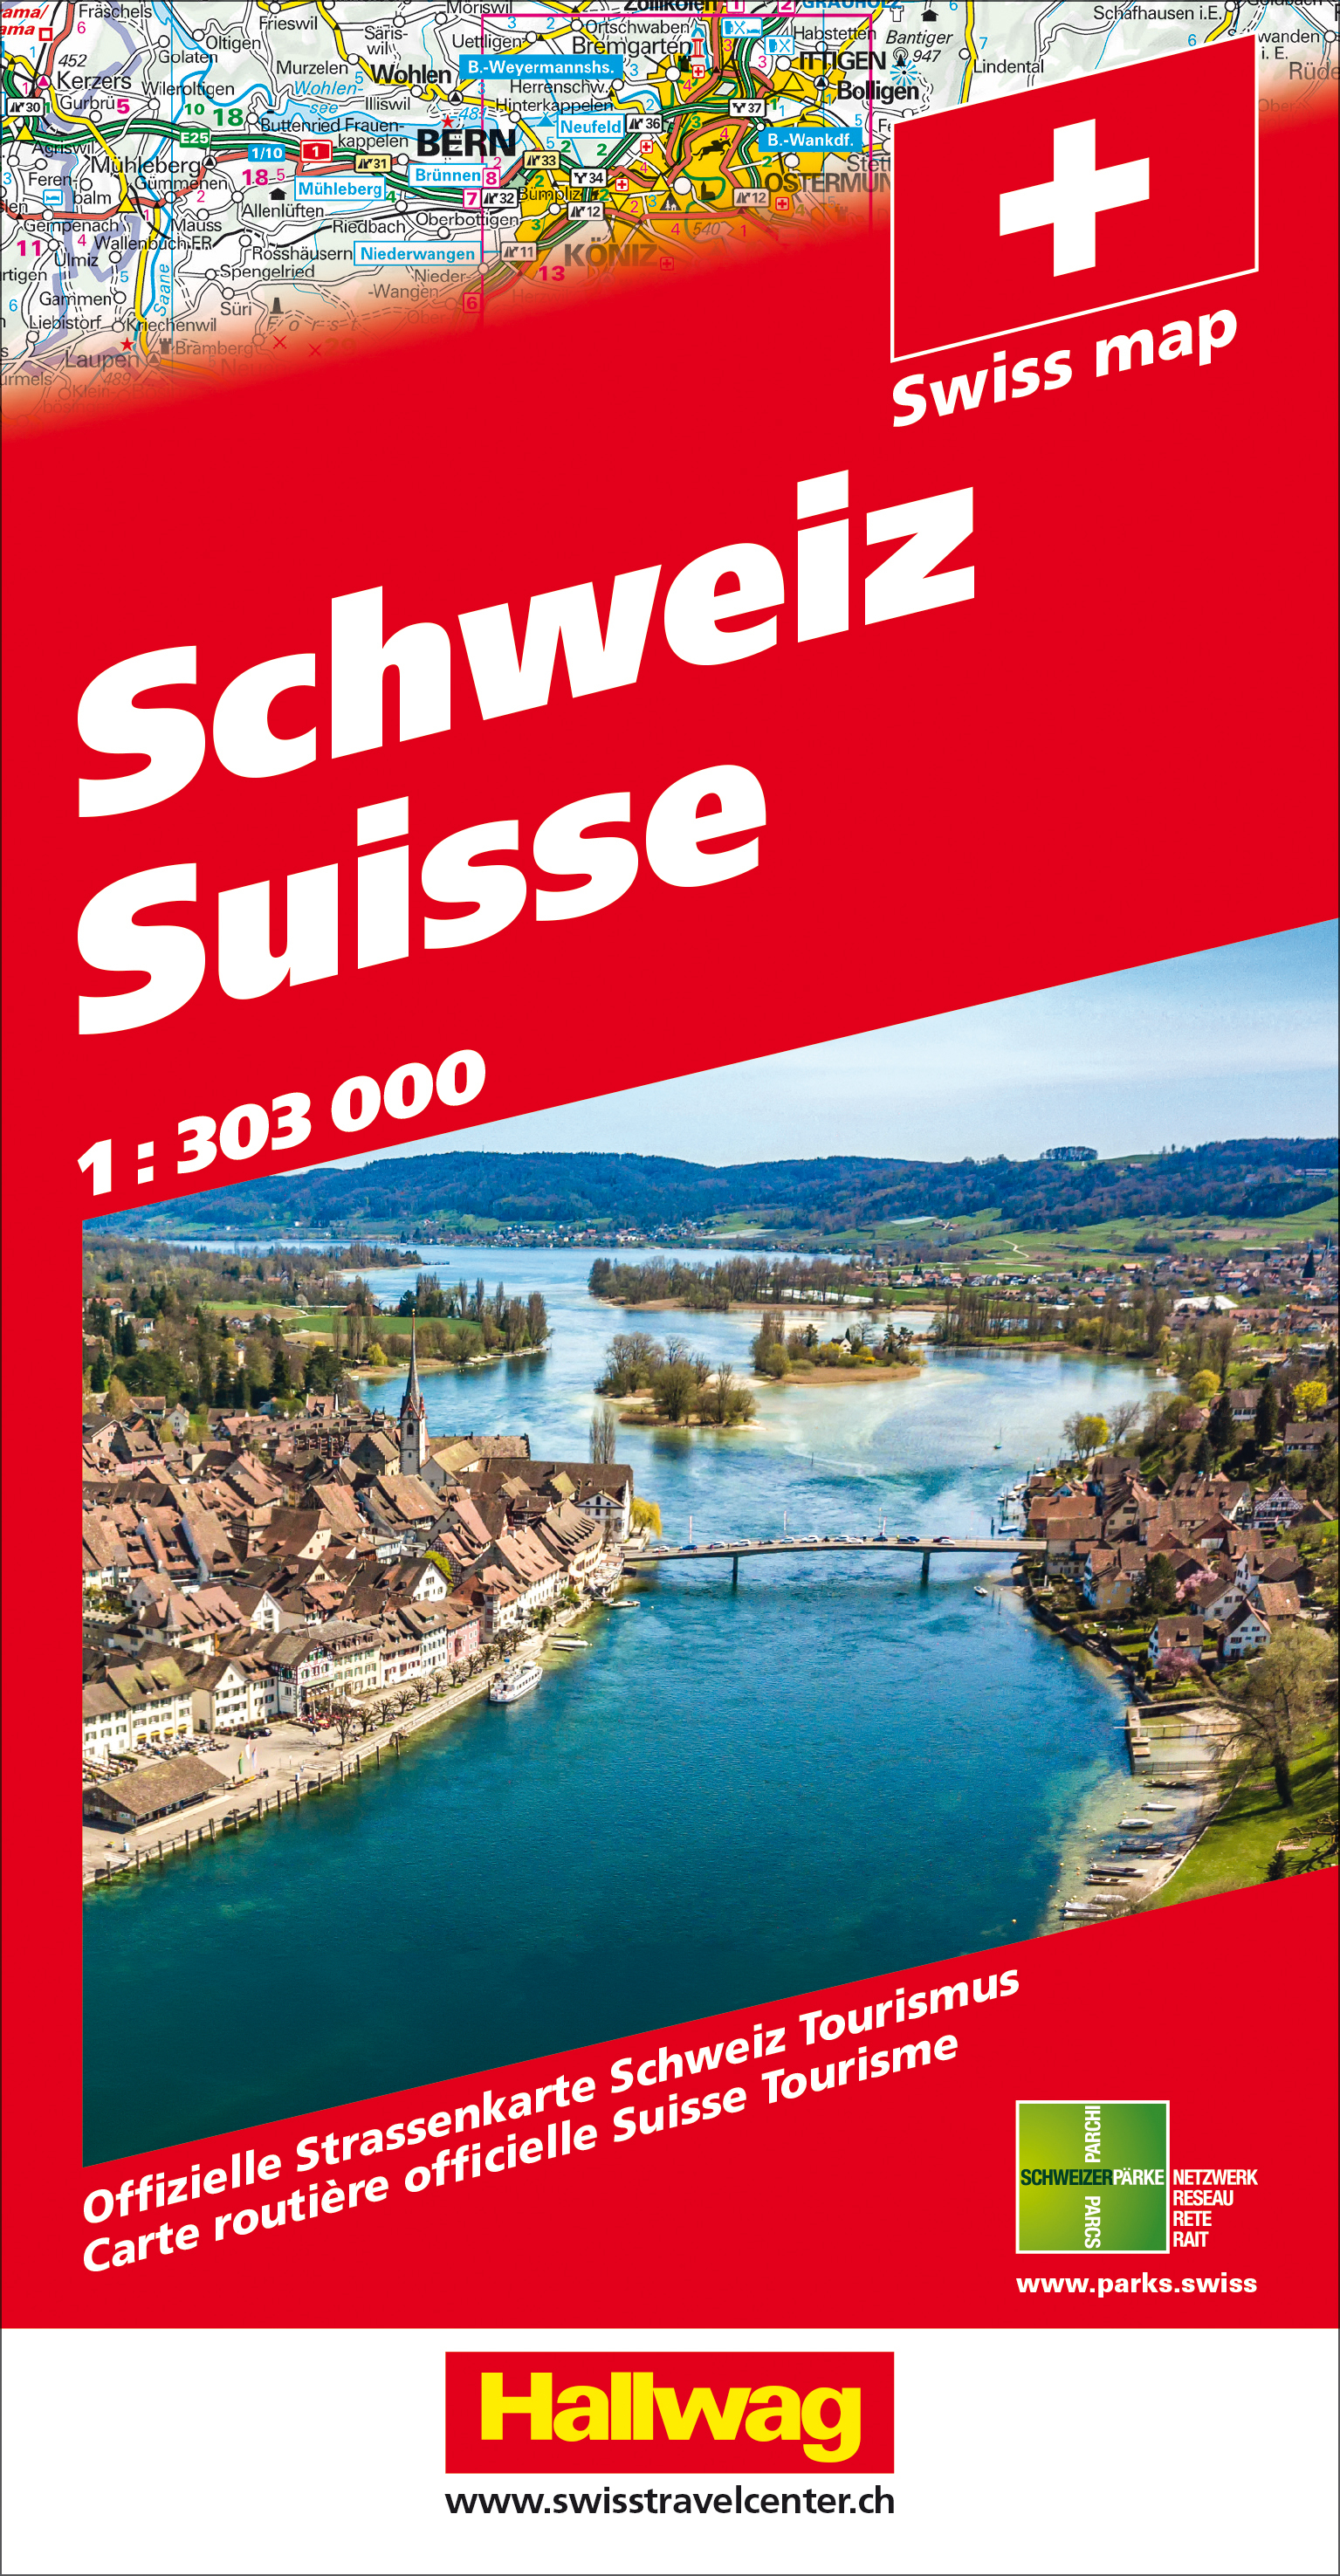 Strassenkarte Schweiz, HALLWAG, 1 : 303'000<br>